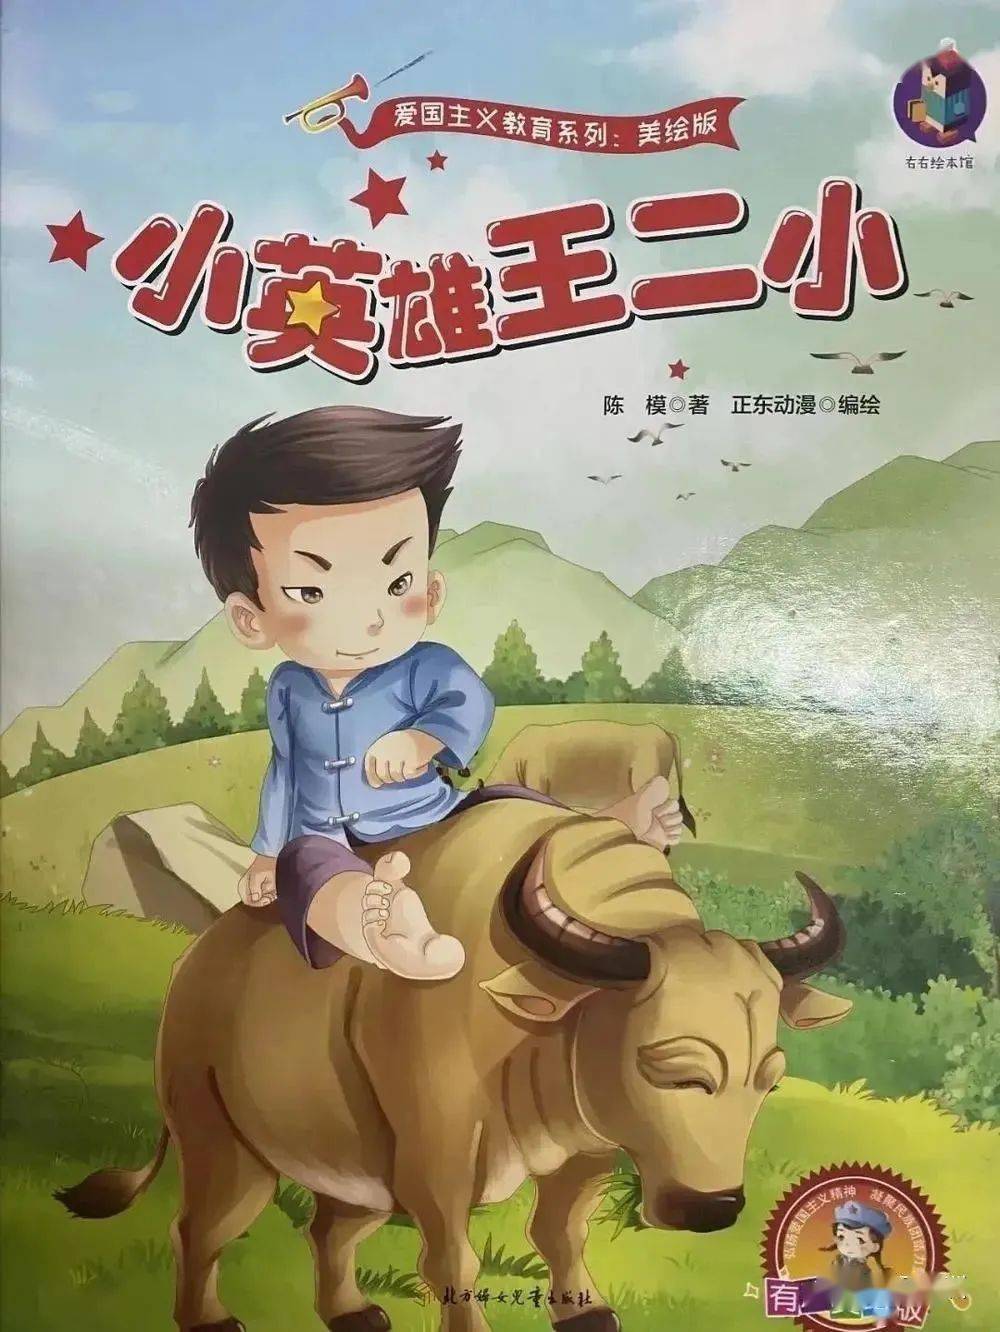 王二小只是一个普通的放牛娃,在一次上山放牛的时候碰到了日本鬼子